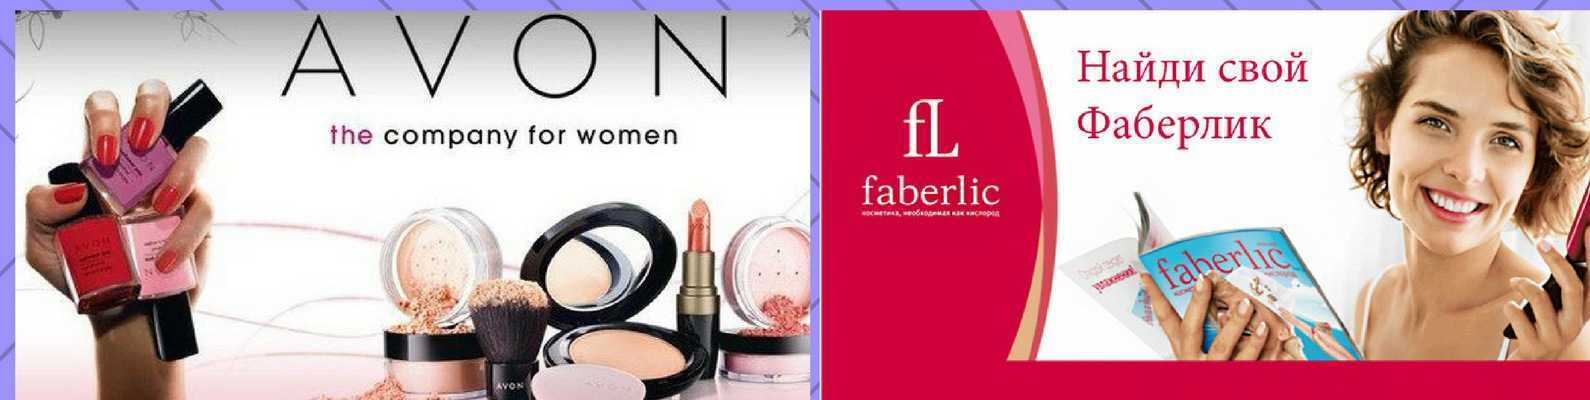 Faberlic ( фаберлик ) отзывы - женская косметика - первый независимый сайт отзывов россии